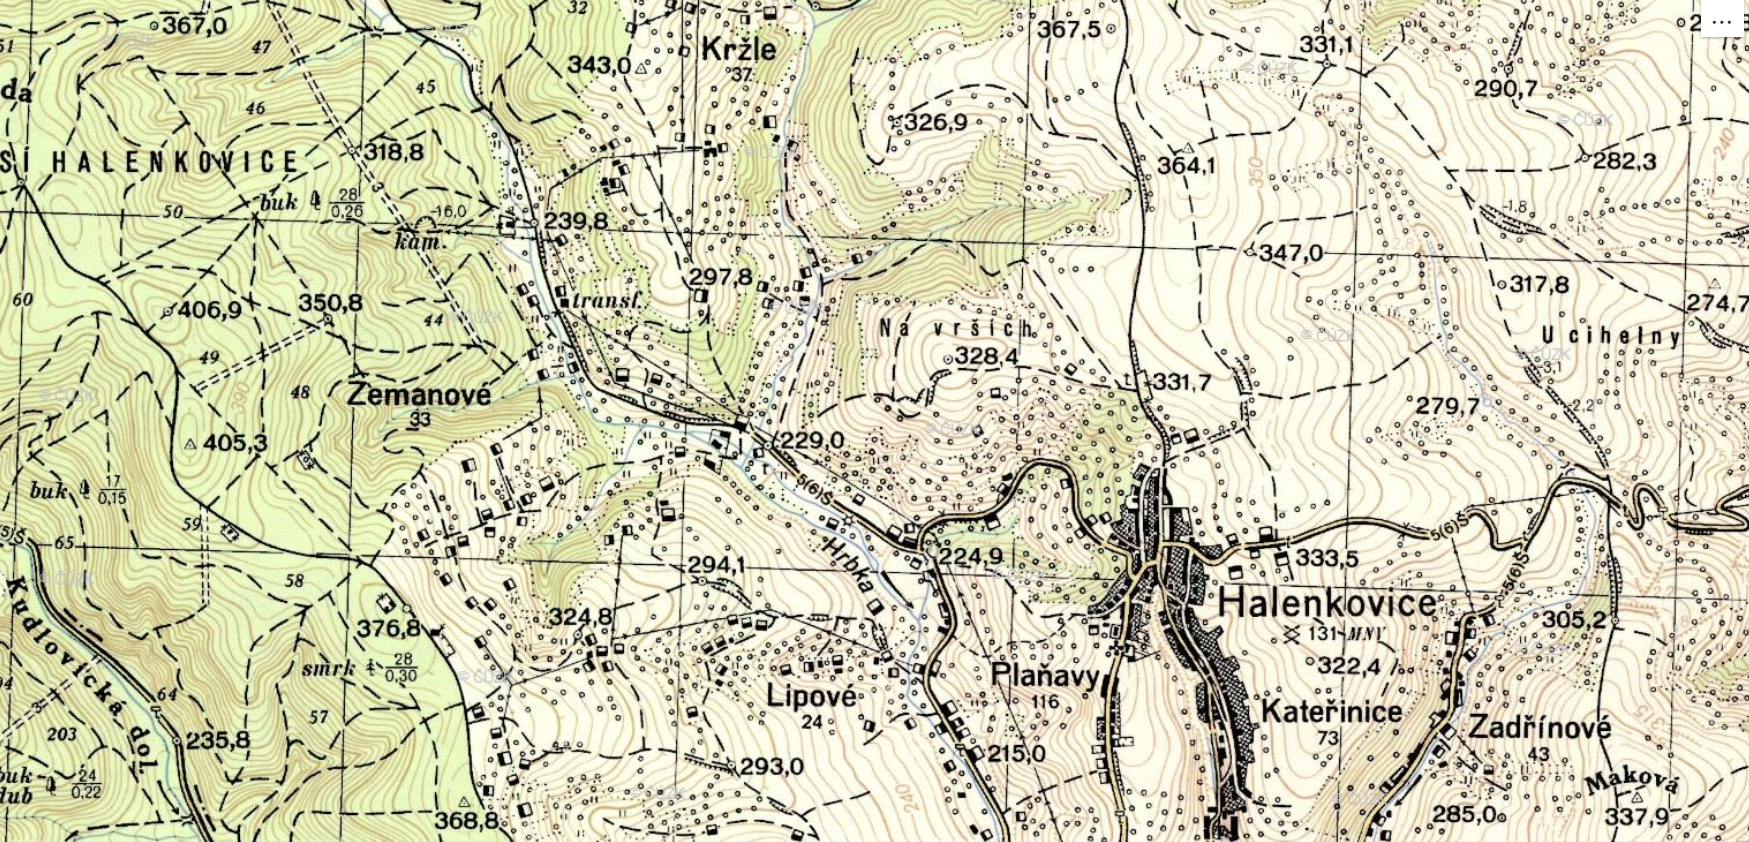 Topografická mapa Halenkovic v systému S-1952, měřítko 1:25 000 (zdroj: https://archivnimapy.cuzk.cz/uazk/topos52/topos52_data/025k/M_33_107_B_d_index.html).